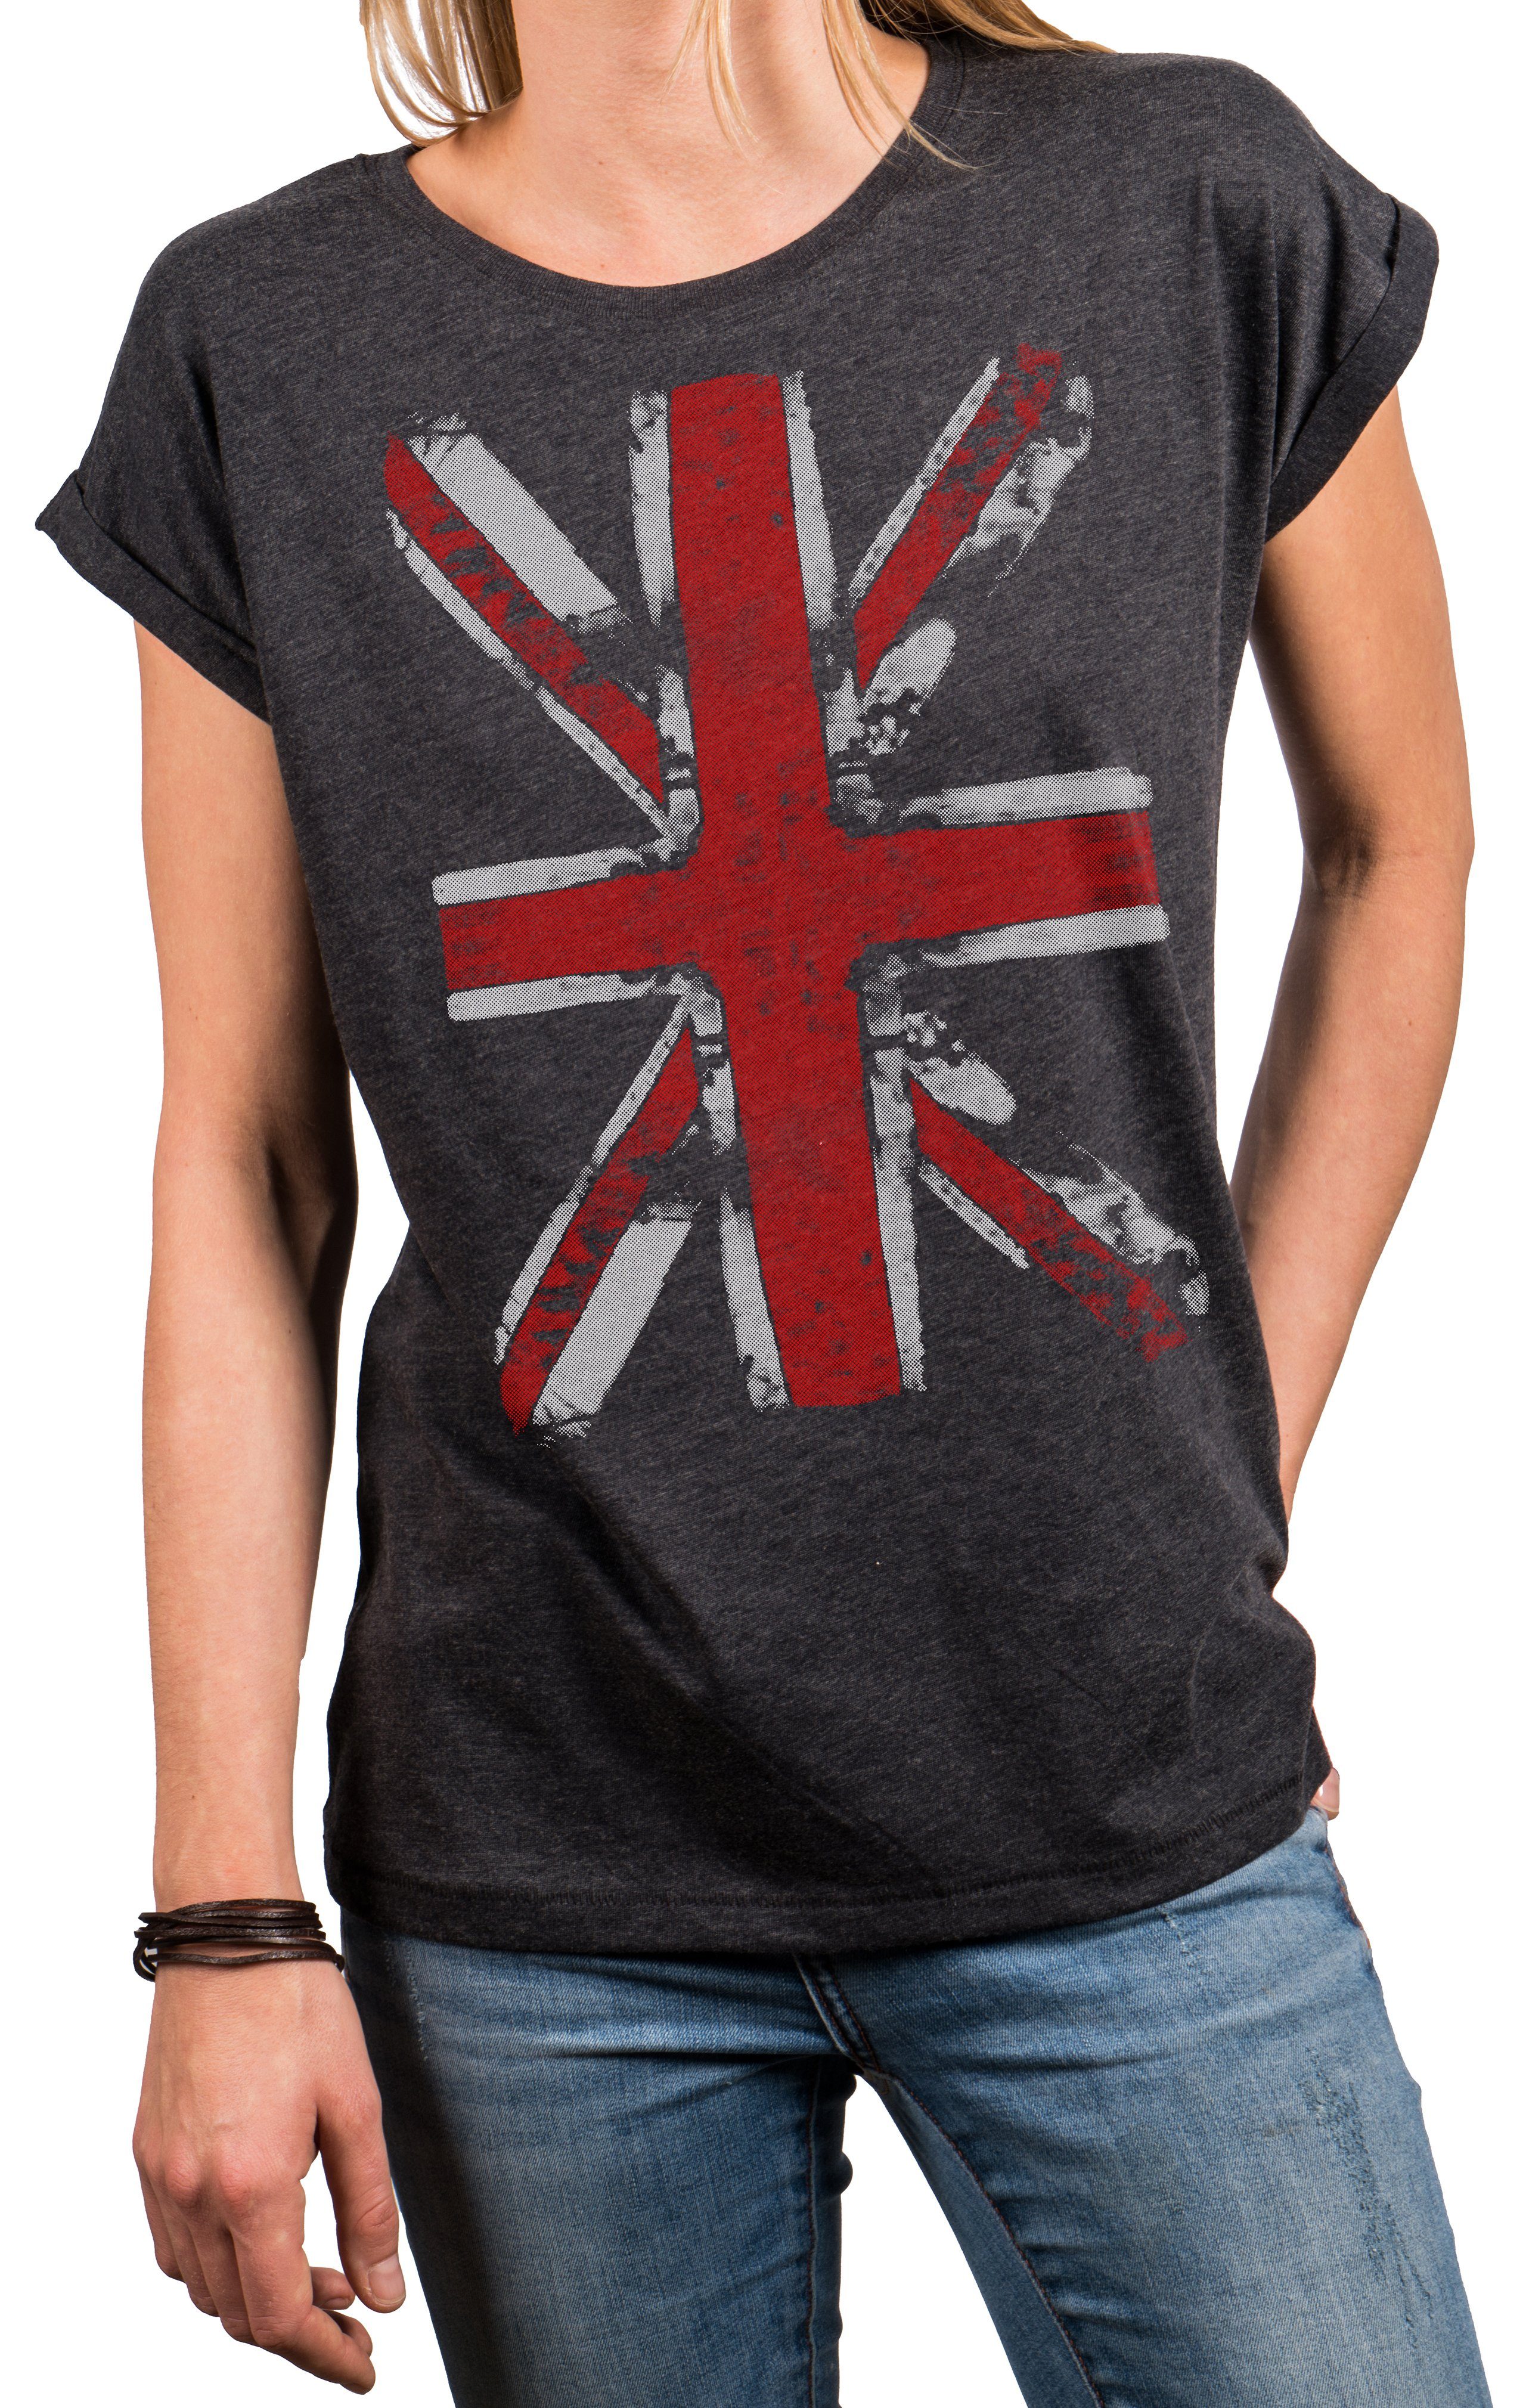 MAKAYA Print-Shirt Damen Top mit Union Jack Fahne - UK Flagge Großbritannien England (Vintage Aufdruck, schwarz, blau, grau) Baumwolle, große Größen